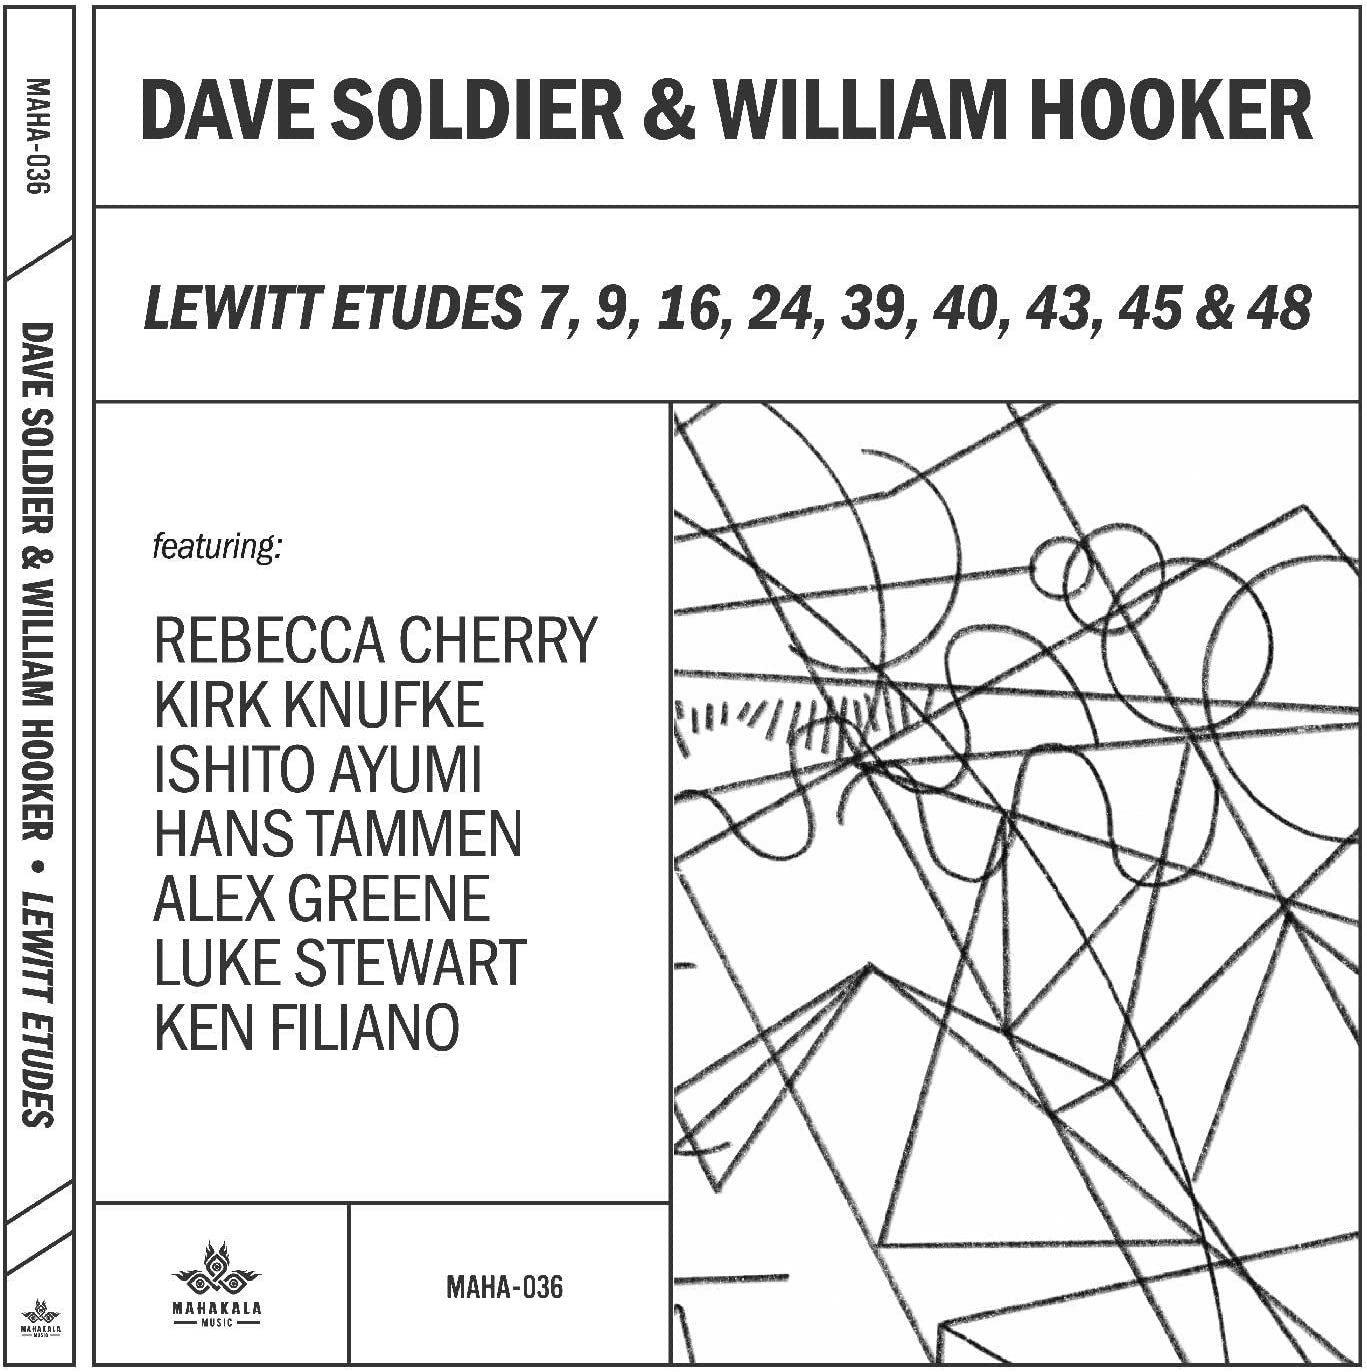 CD Shop - SOLDIER, DAVE & WILLIAM H LEWITT ETUDES